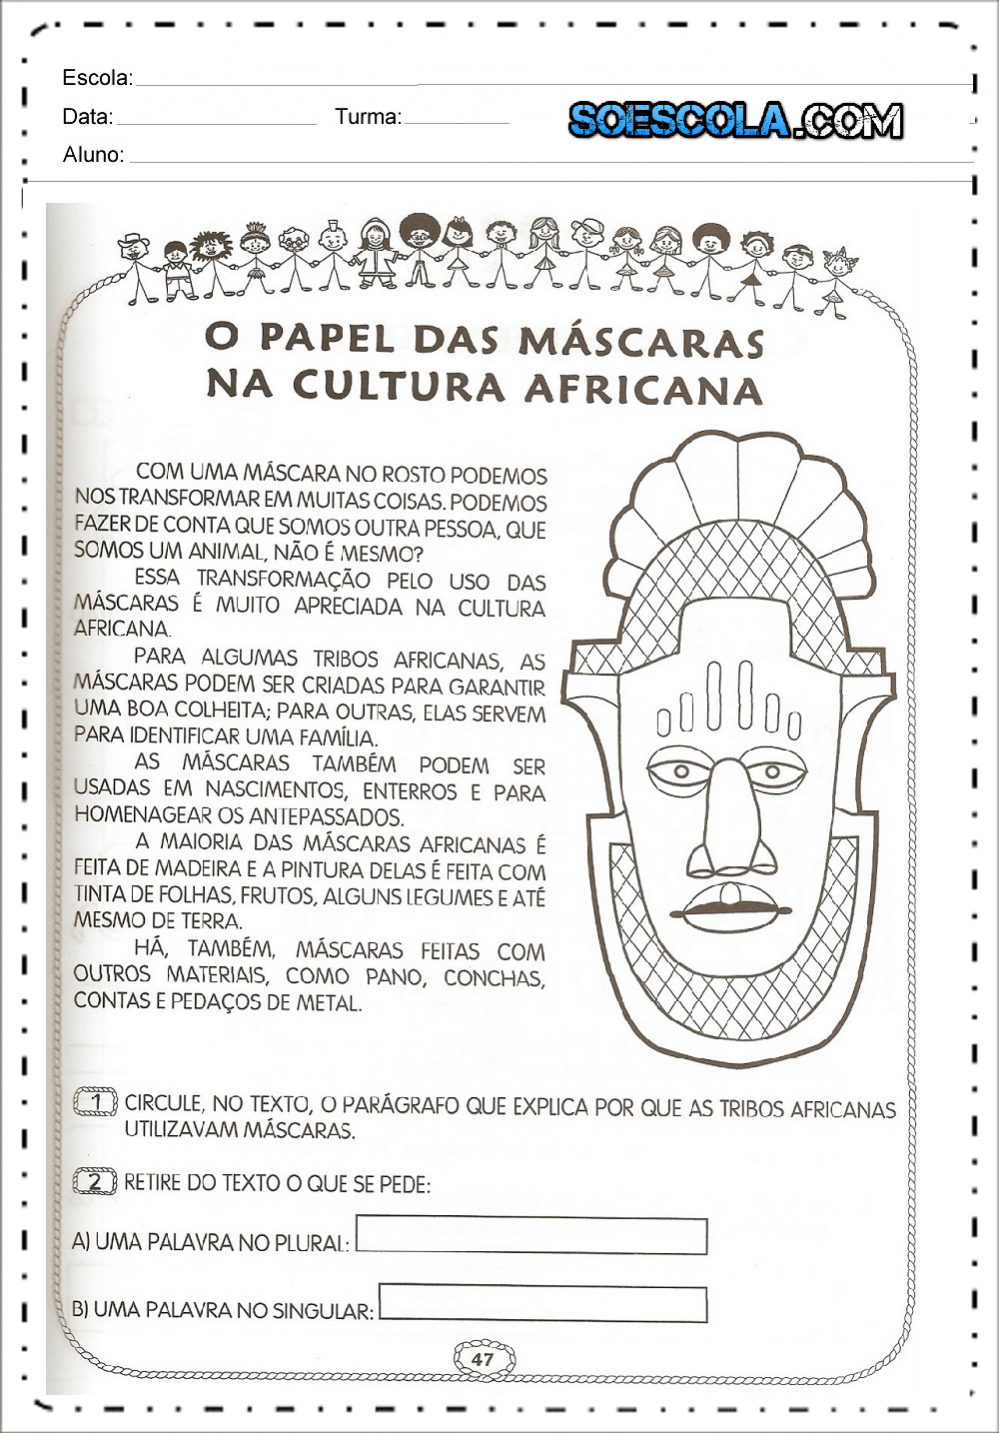 Atividades sobre máscaras africanas - O papel das mascaras africanas ...